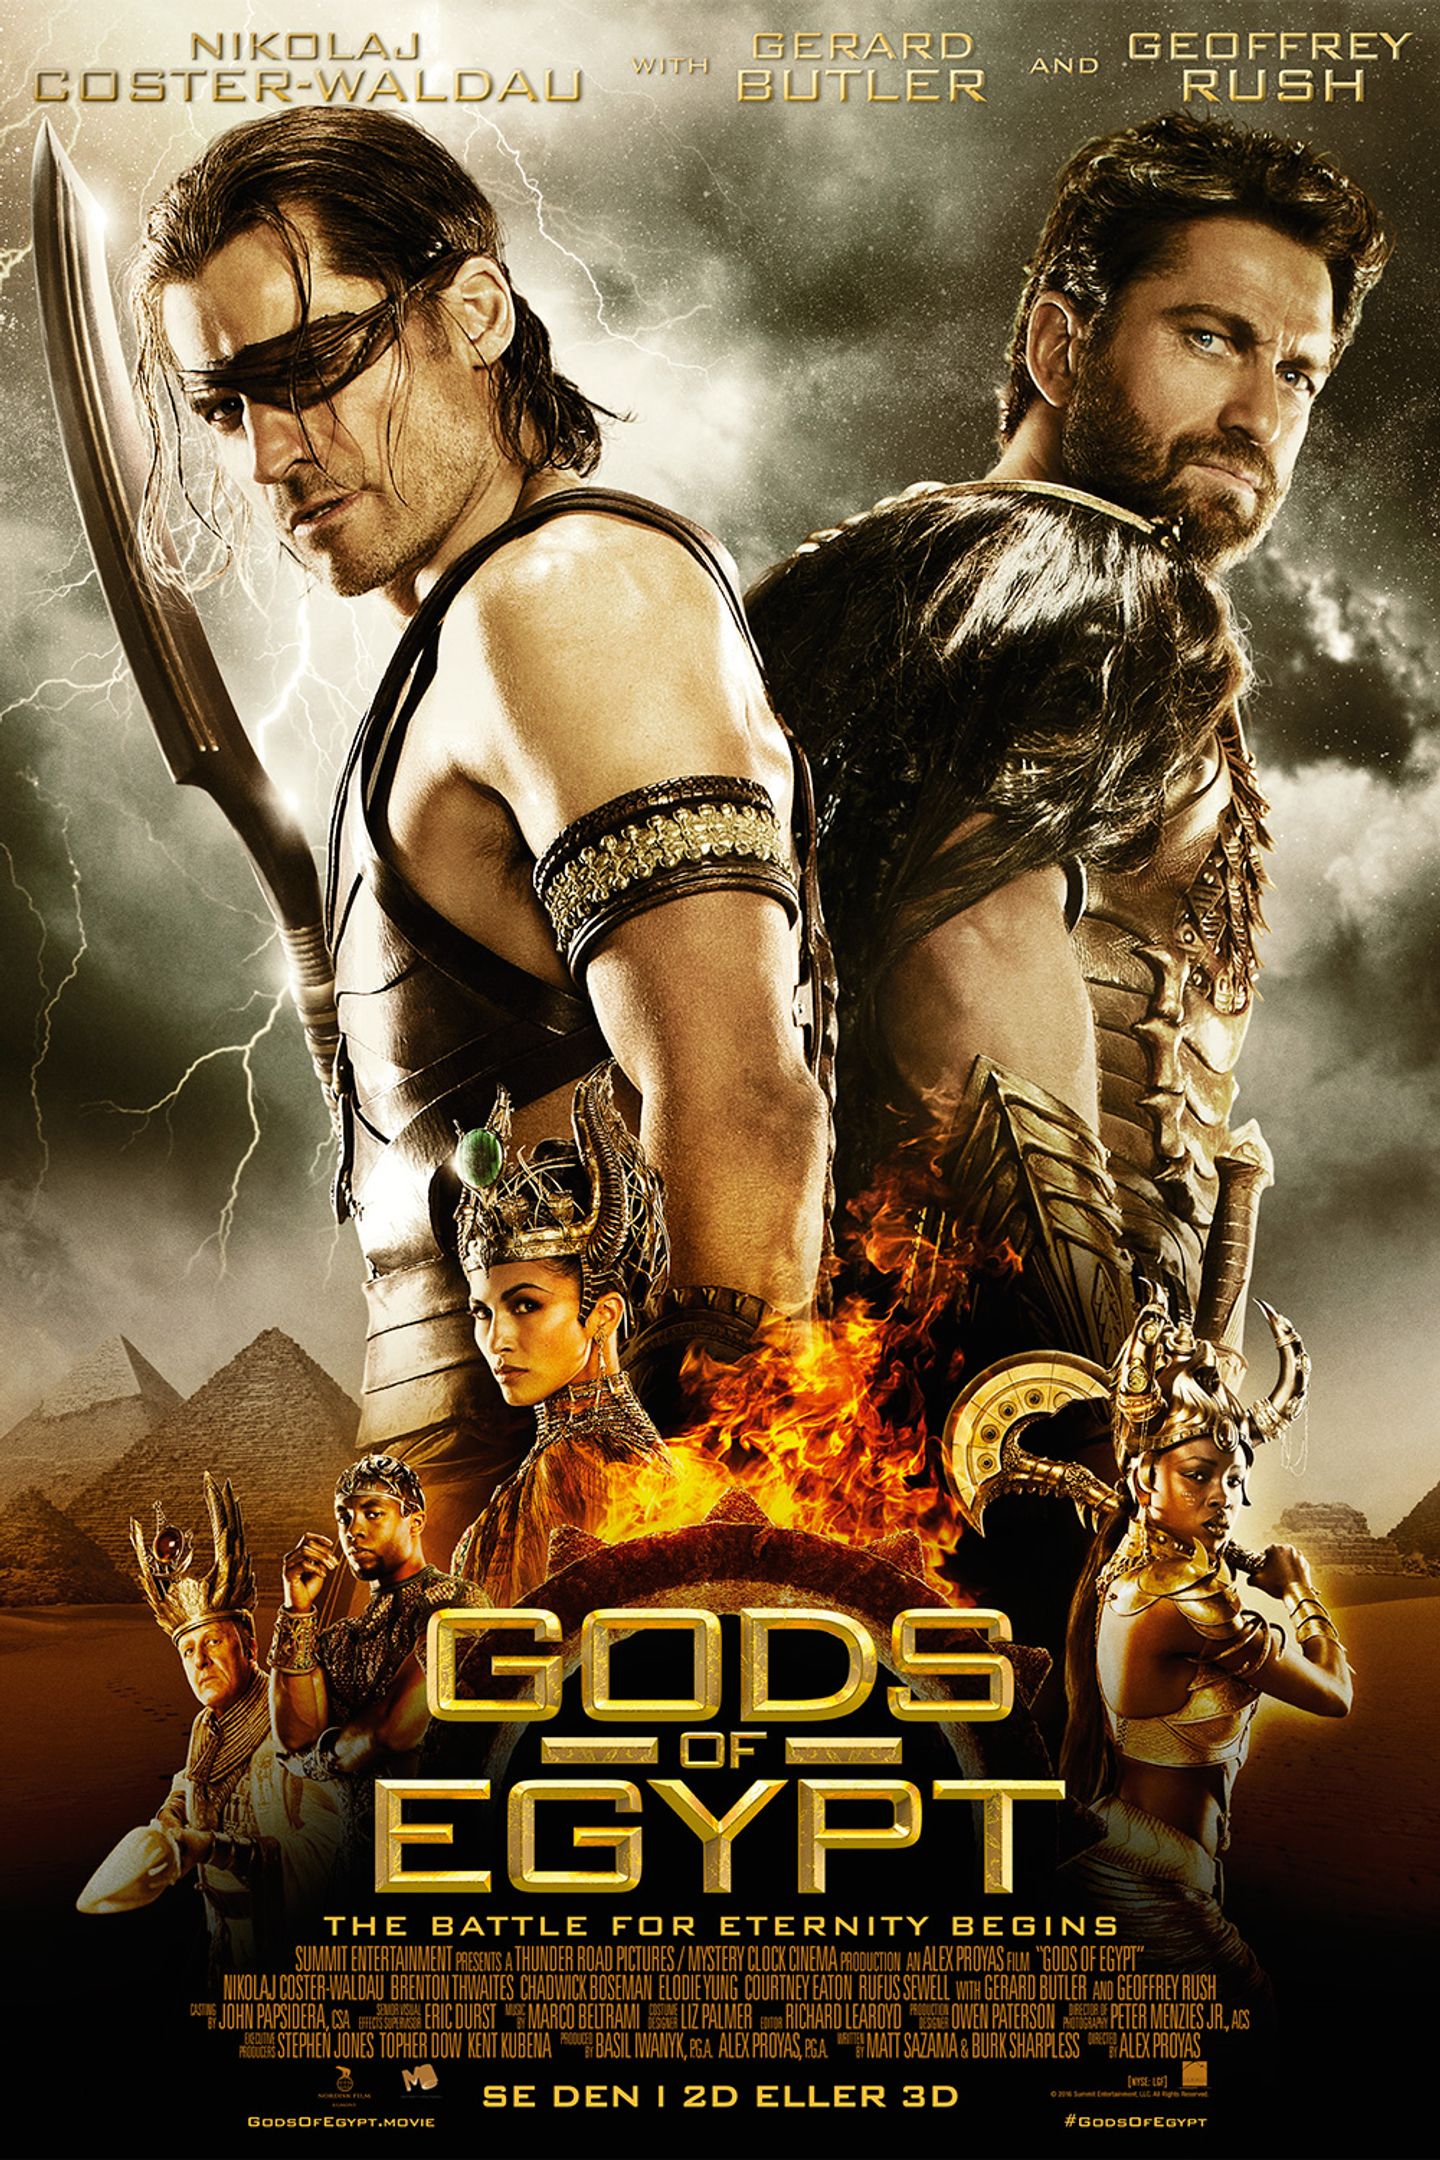 Plakat for 'Gods of Egypt (3D)'